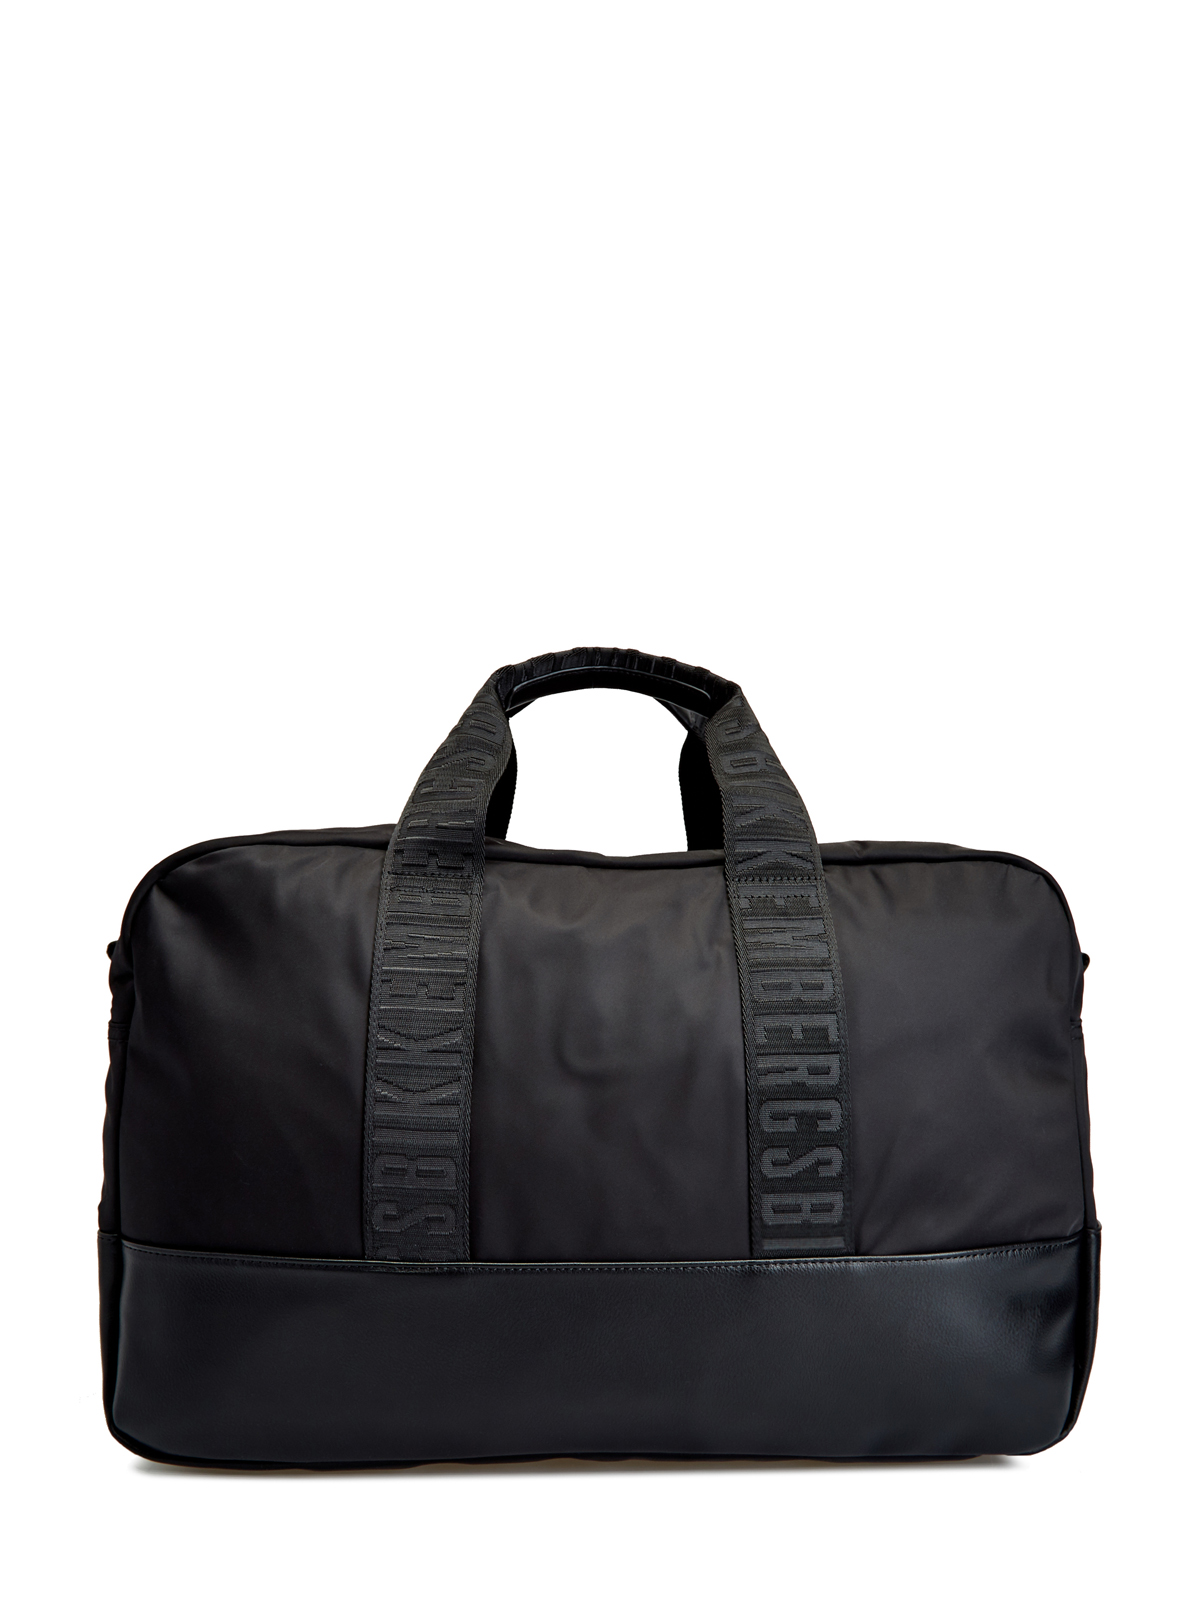 Дорожная сумка Next 3.0 в спортивном стиле BIKKEMBERGS, цвет черный, размер M - фото 5